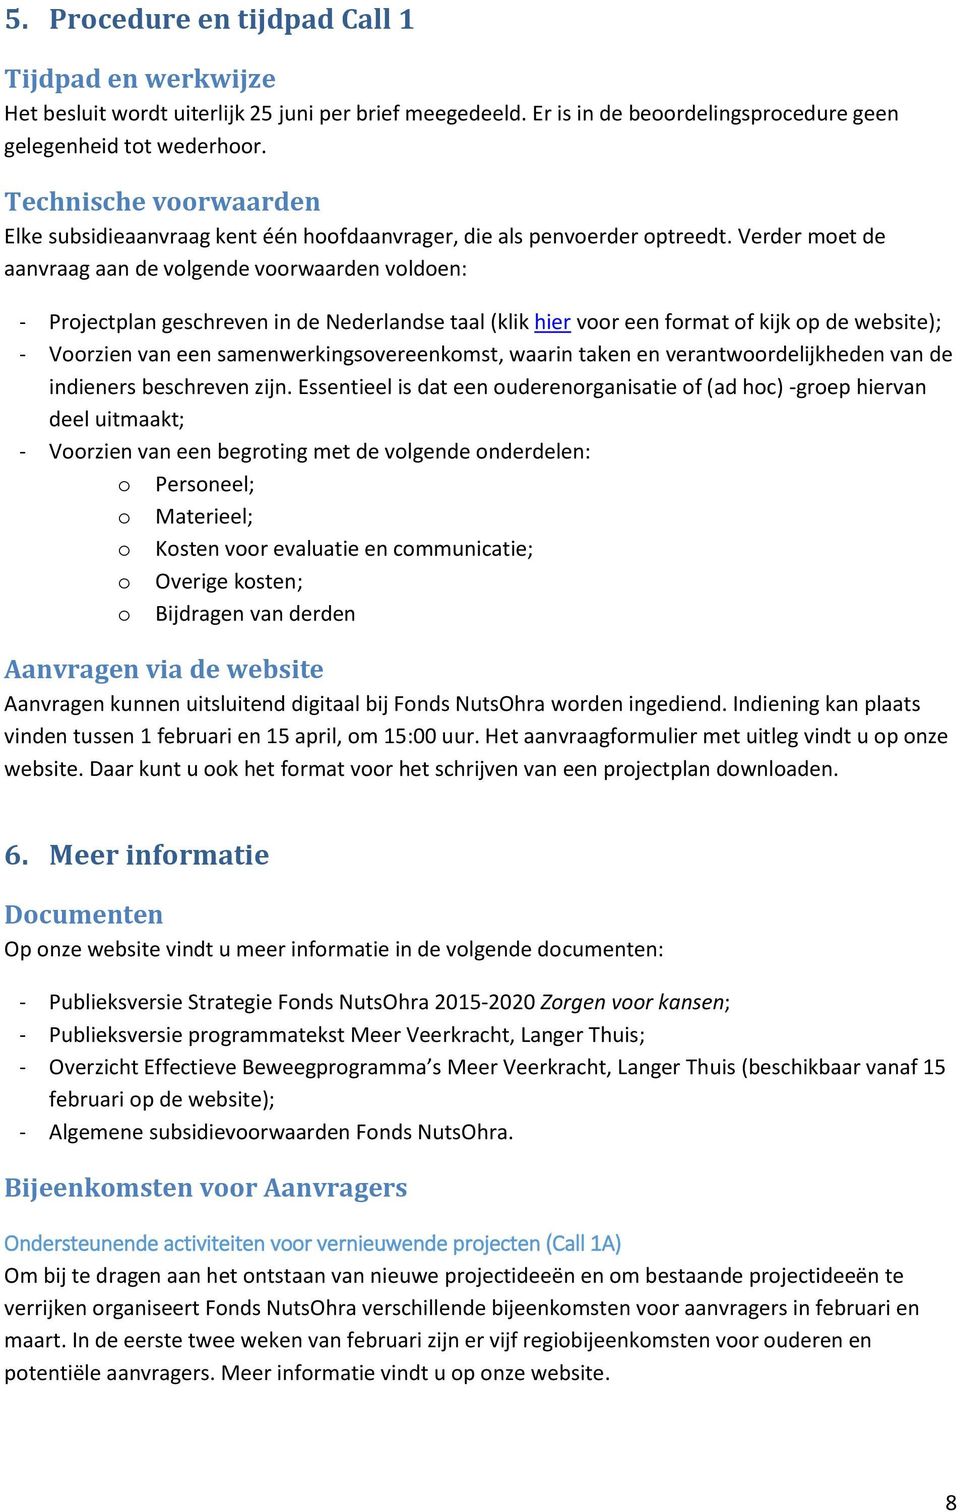 Verder moet de aanvraag aan de volgende voorwaarden voldoen: - Projectplan geschreven in de Nederlandse taal (klik hier voor een format of kijk op de website); - Voorzien van een